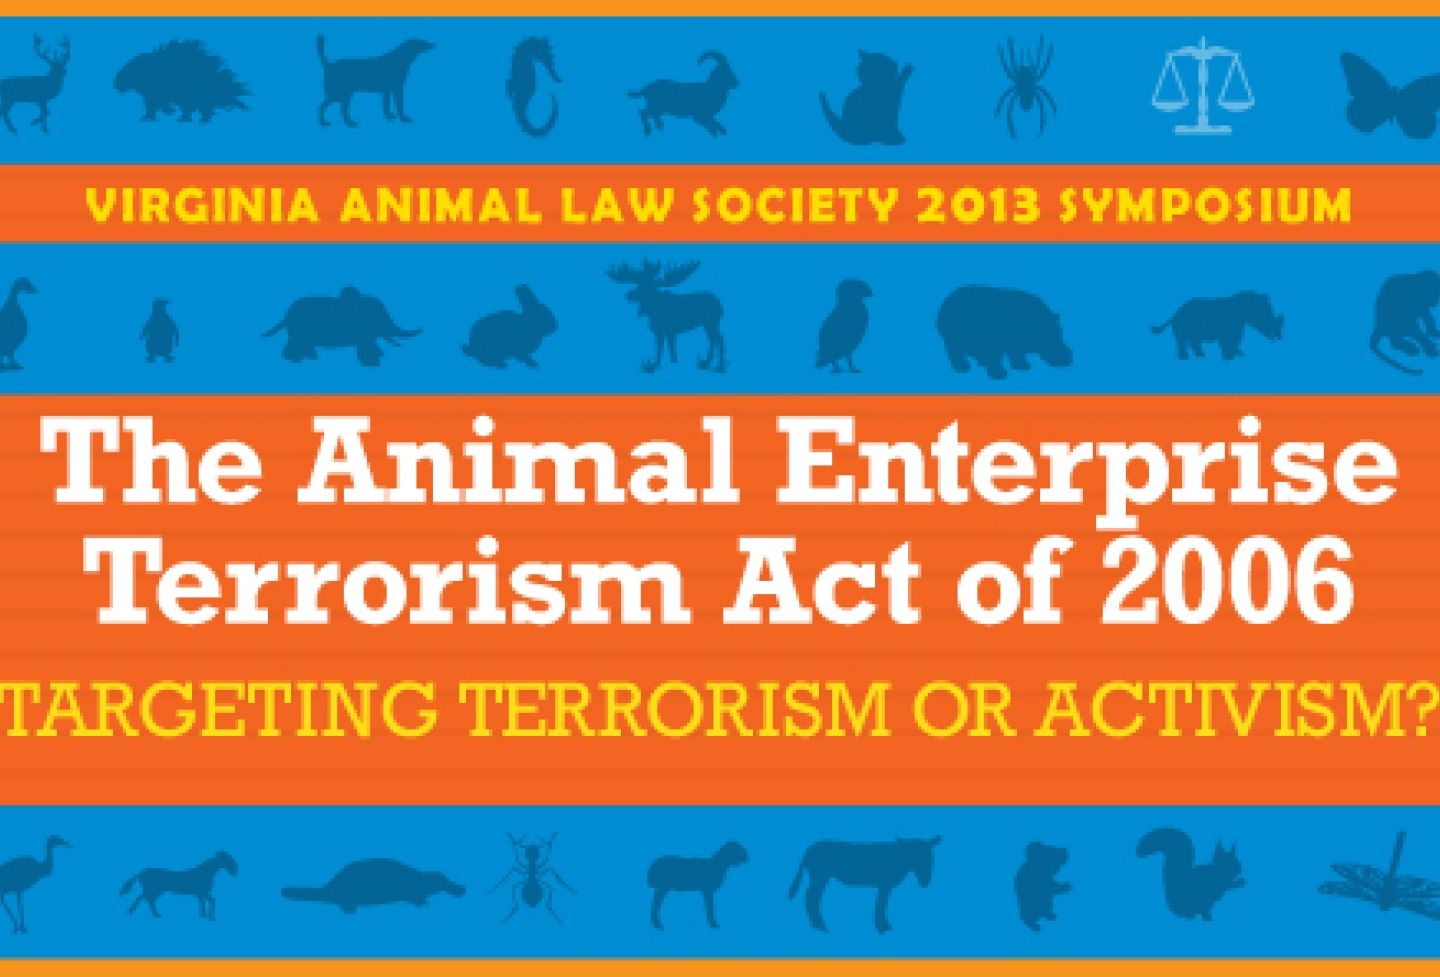 The Animal Enterprise Terrorism Act of 2006: Targeting Terrorism or Activism?